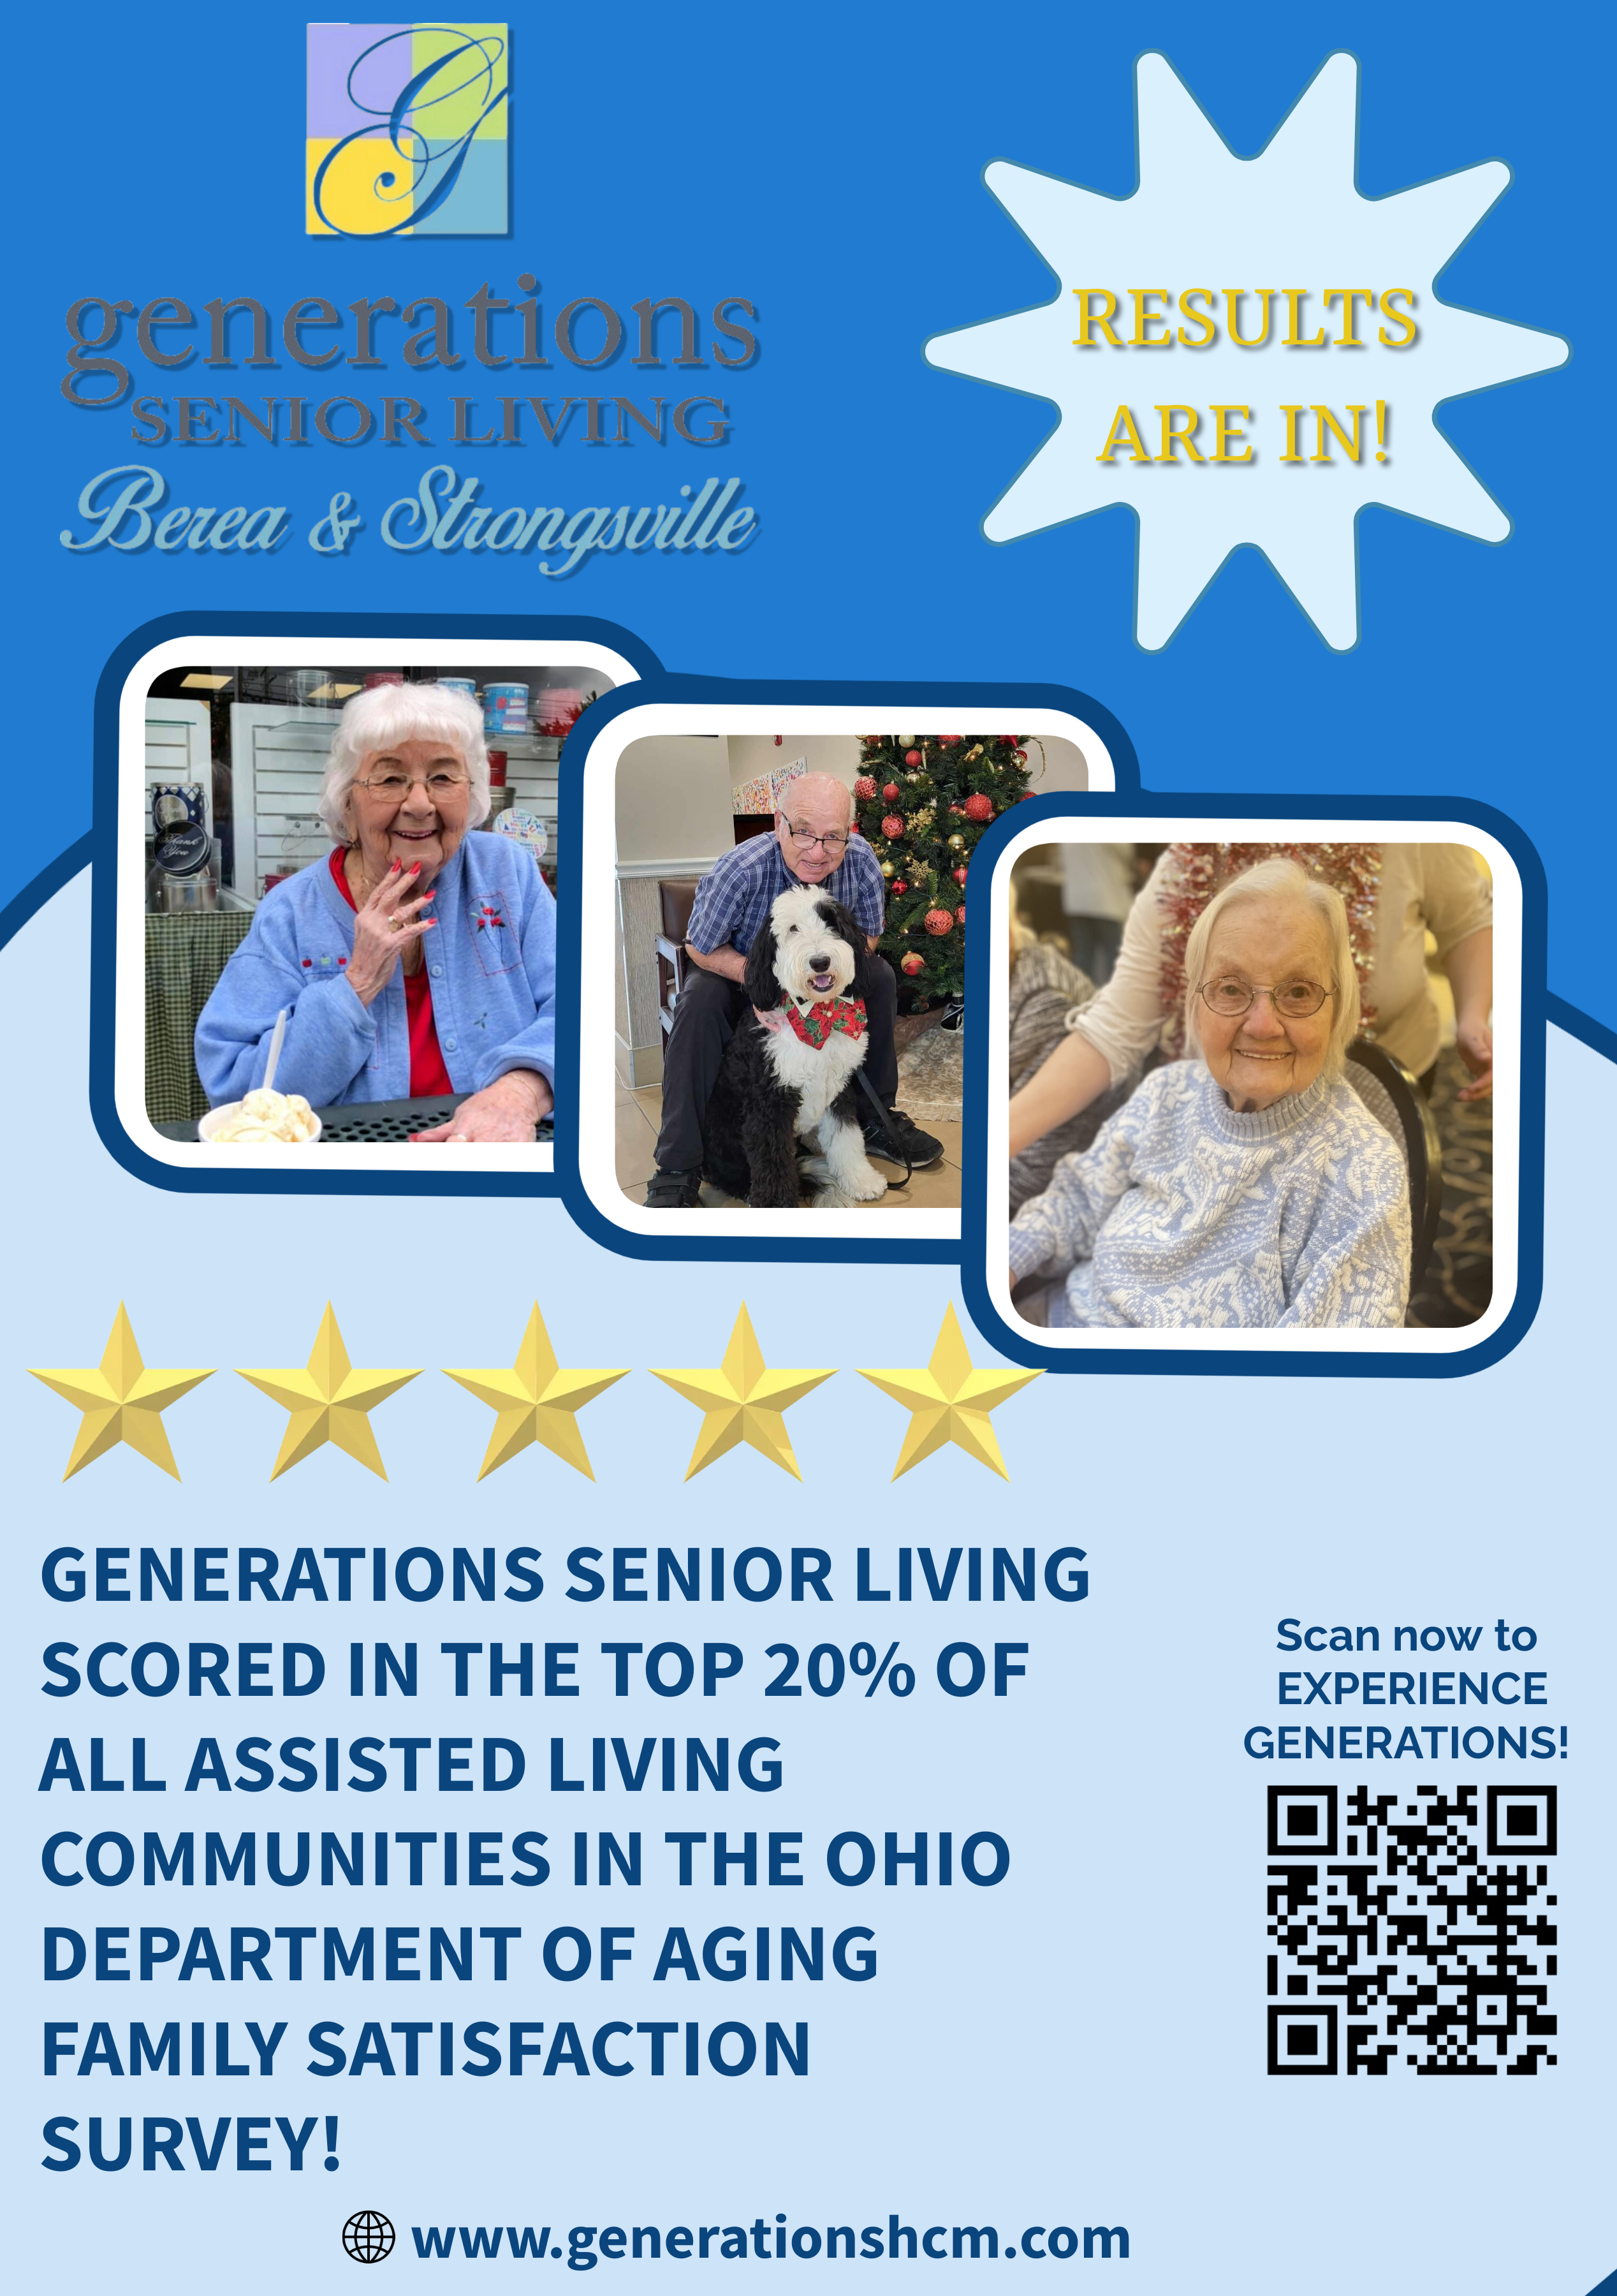 Generation Senior Living Ohio Department of Aging SURVEY